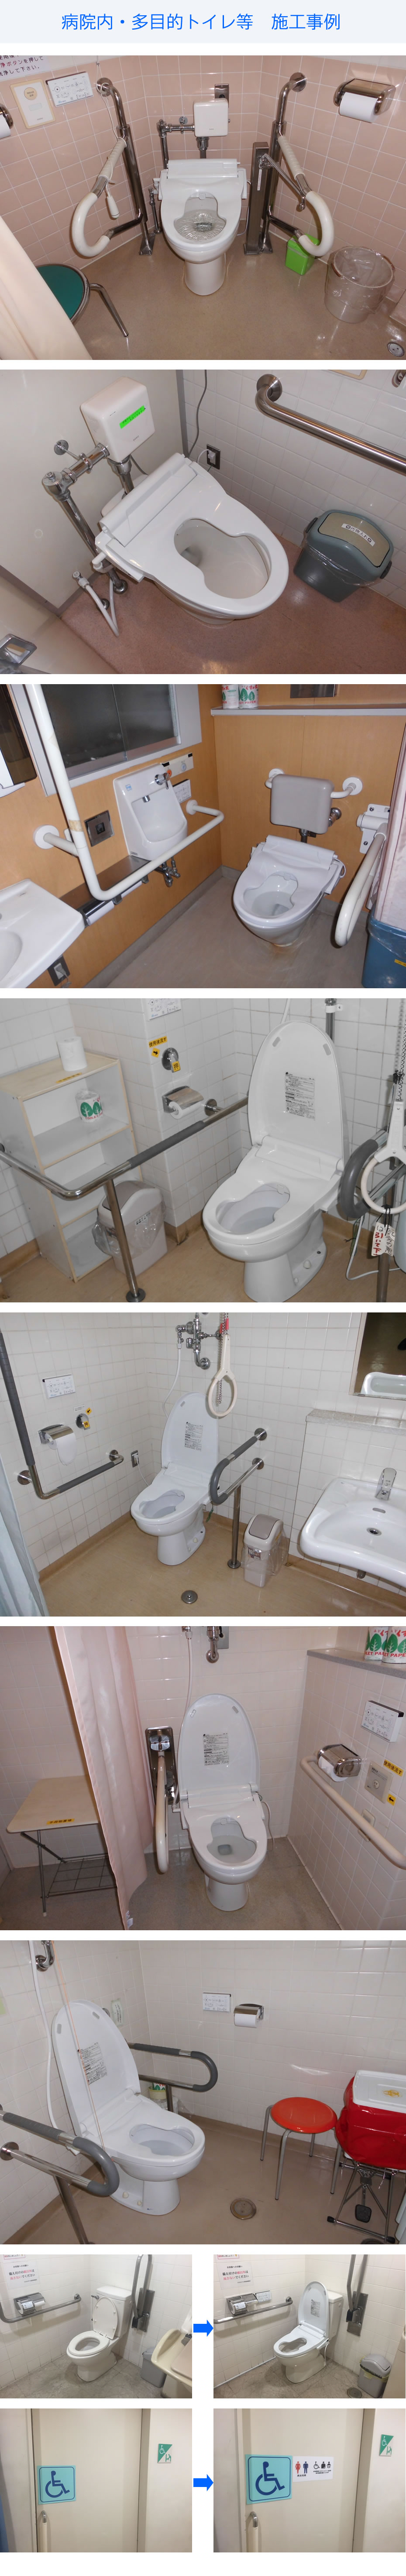 病院内にある既存の多目的トイレ、多機能トイレでスペースが無い場合、汚物流し台を設置するのは困難です。「e-anza(いい安座)」は既存トイレを活かすことで、広いスペースでなくても施工可能です。開口部（右図）がとても広くなります。